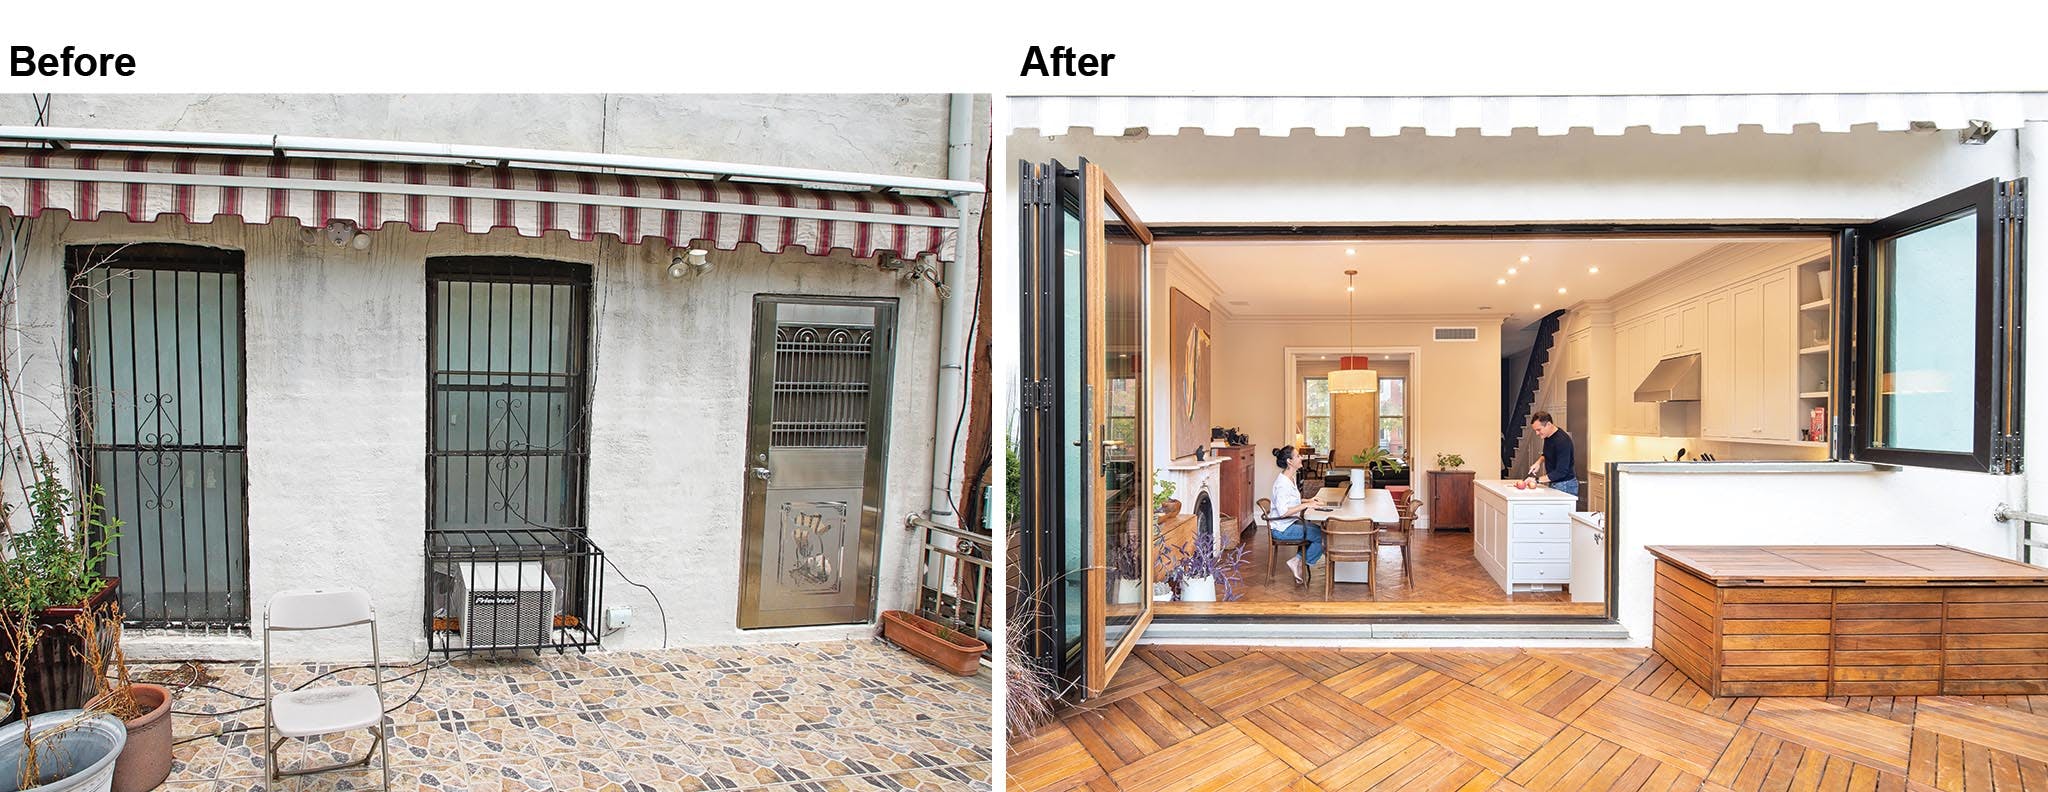 transformations with retractable patio doors